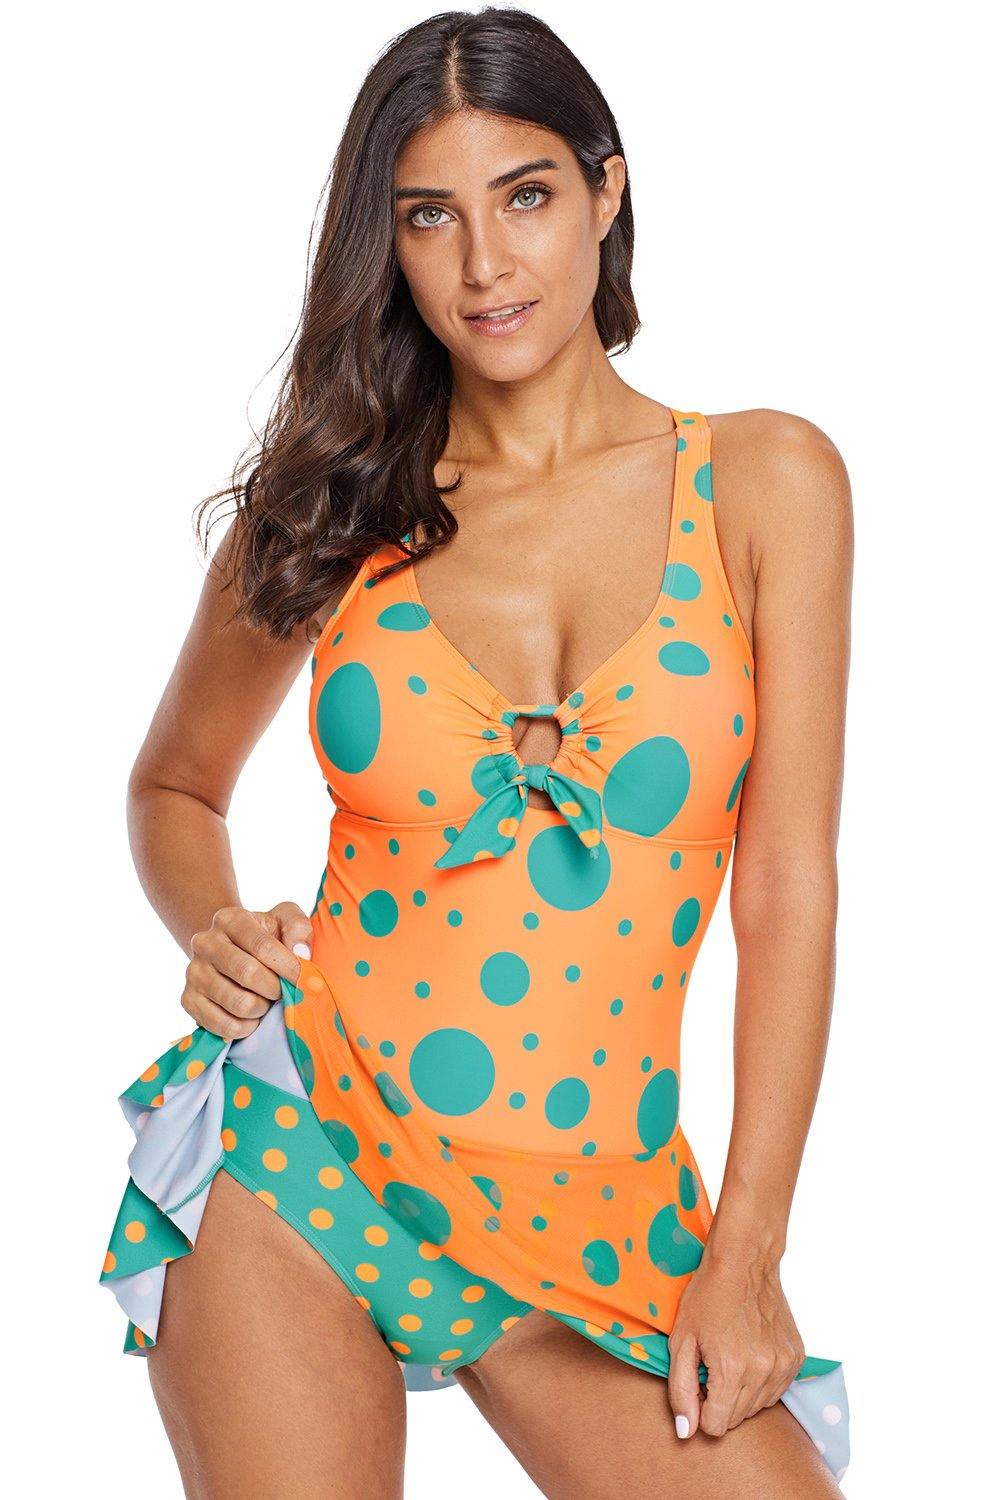 Blue Polka Dot Print One-piece Swim Dress - L & M Kee, LLC